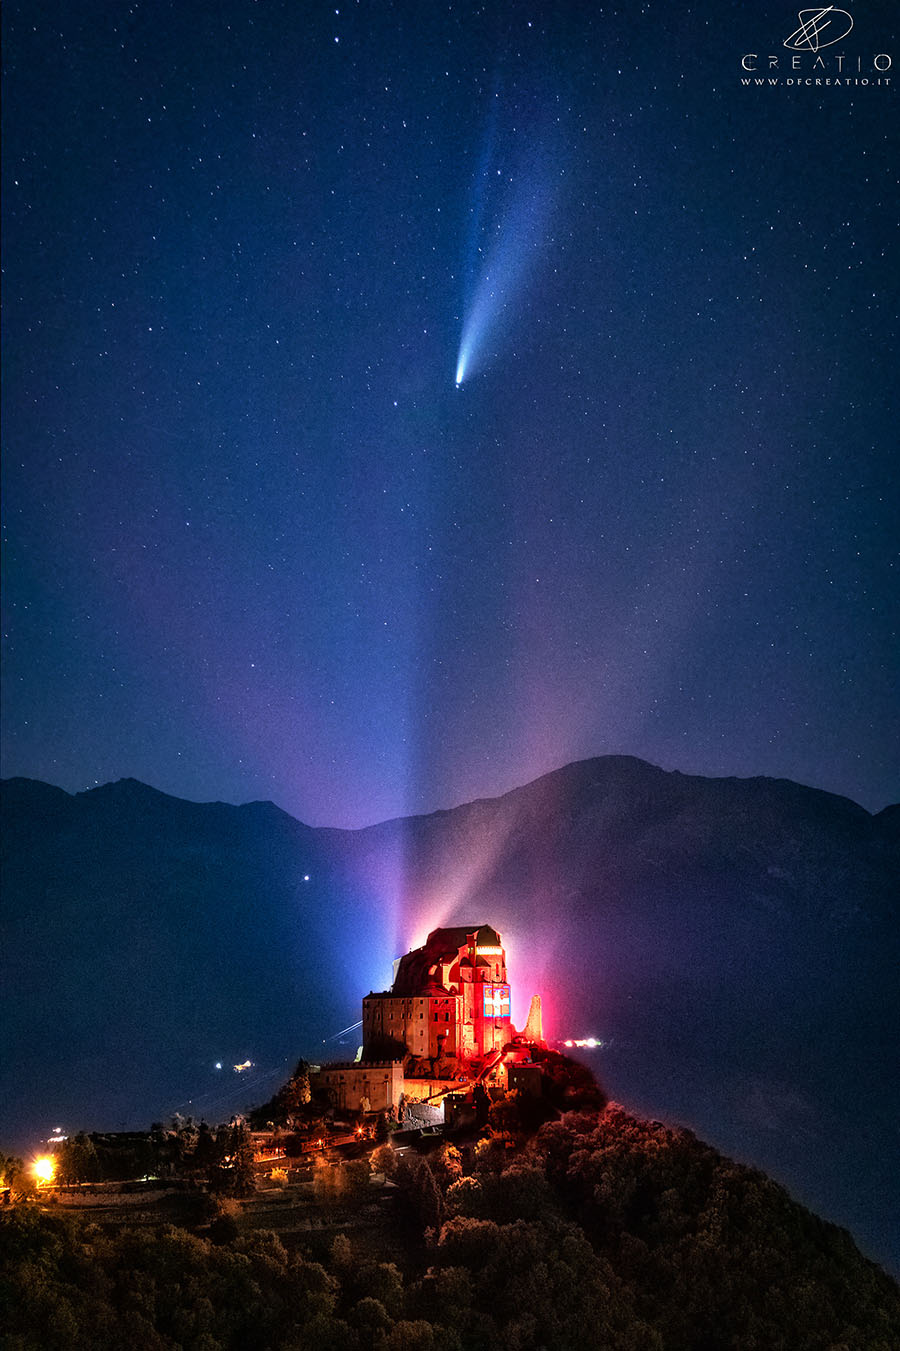 Encounters - Incontri  La Sacra di San Michele e la cometa C/2020 F3 (NEOWISE) in un incontro magico - Duilio Fiorille